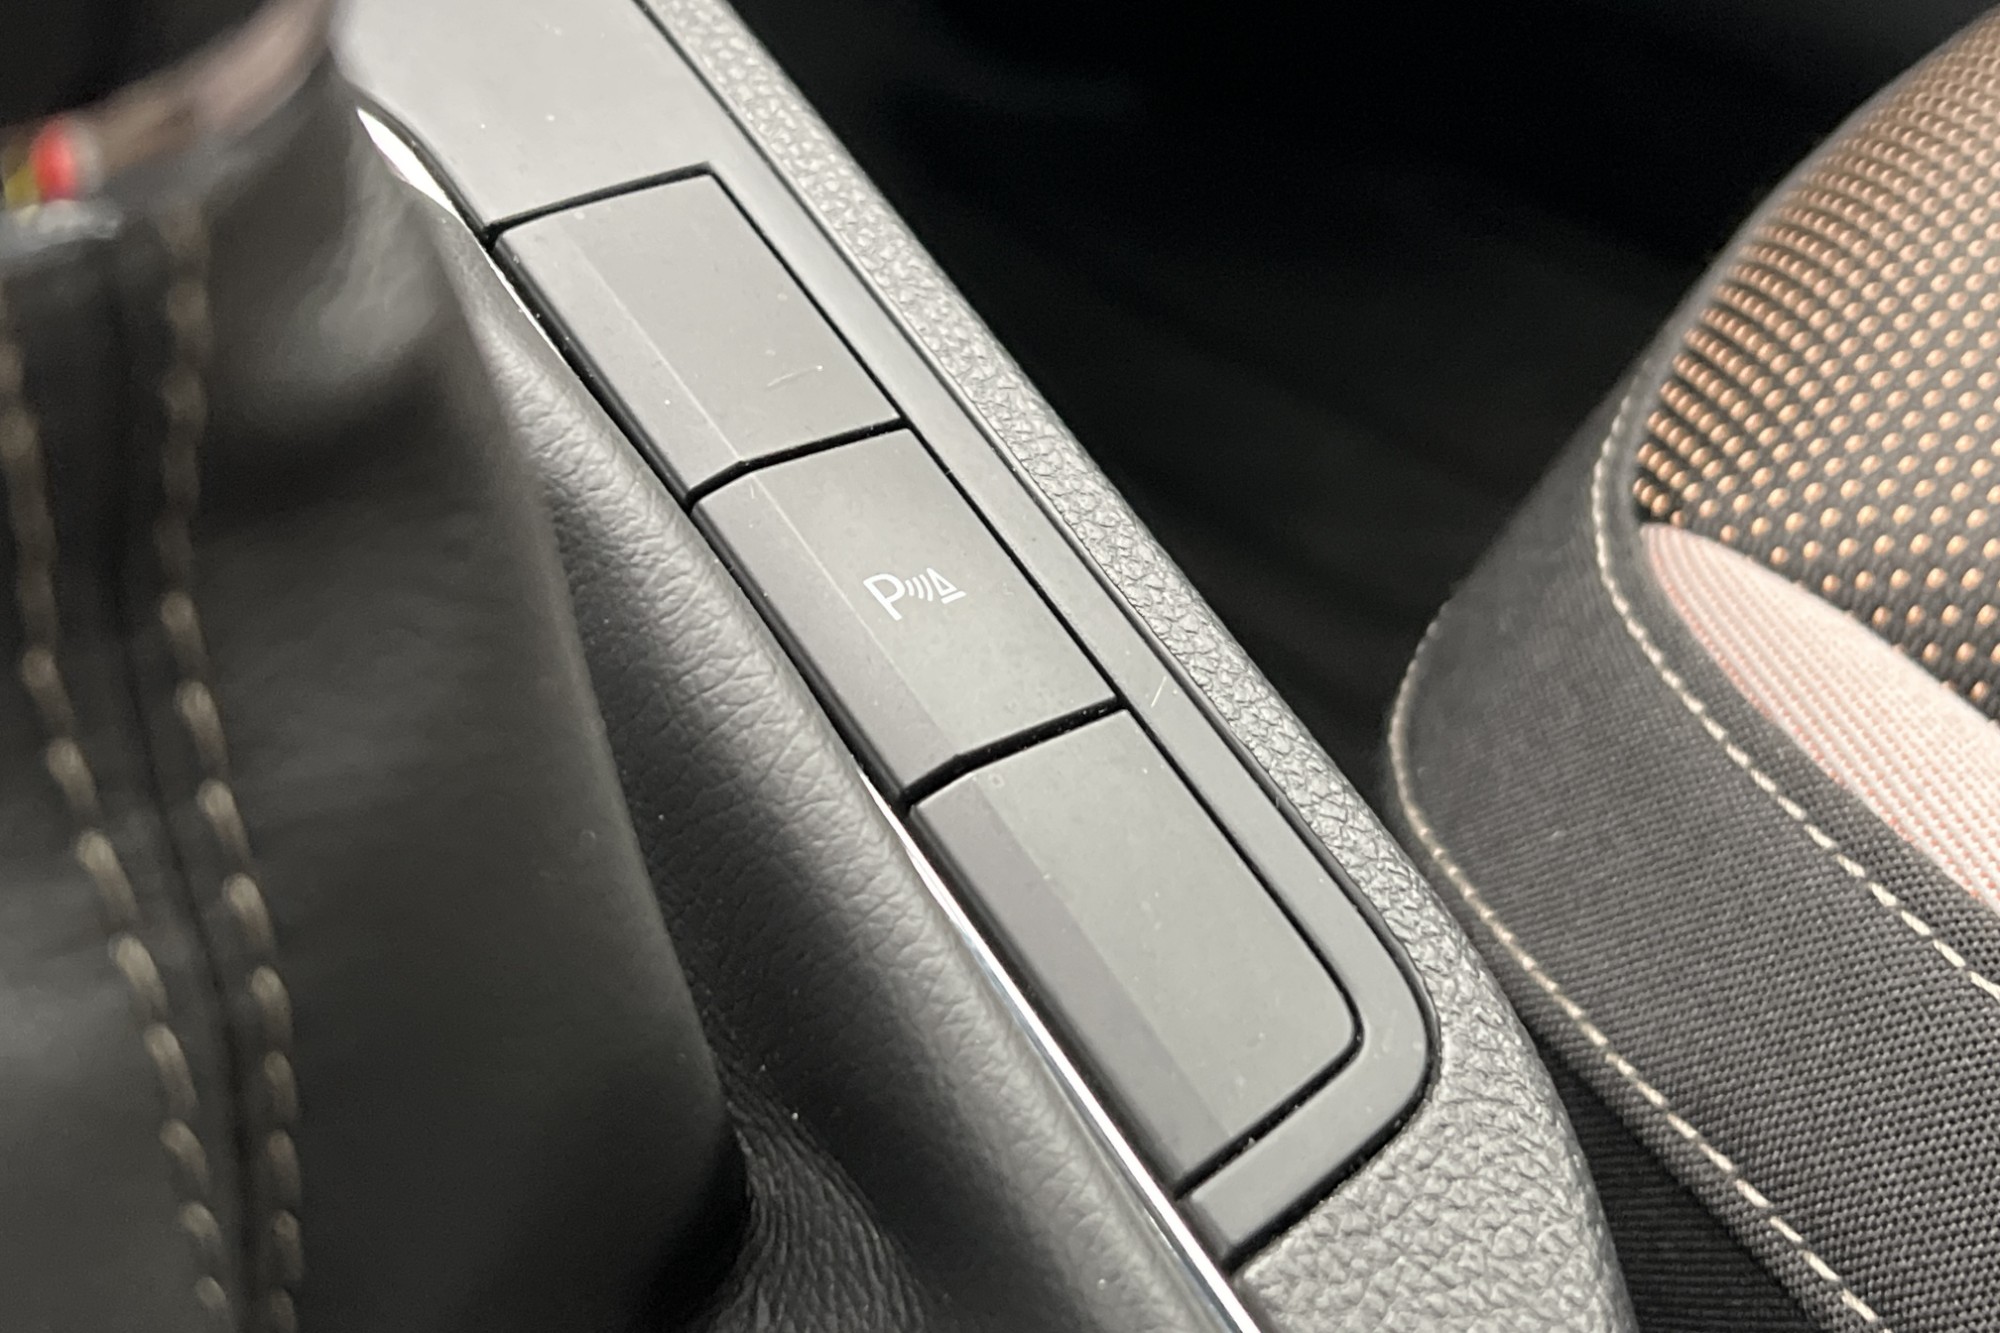 SEAT Ibiza 1.0 EcoTSI 115hk BEATS B-Kamera Carplay Lågsskatt